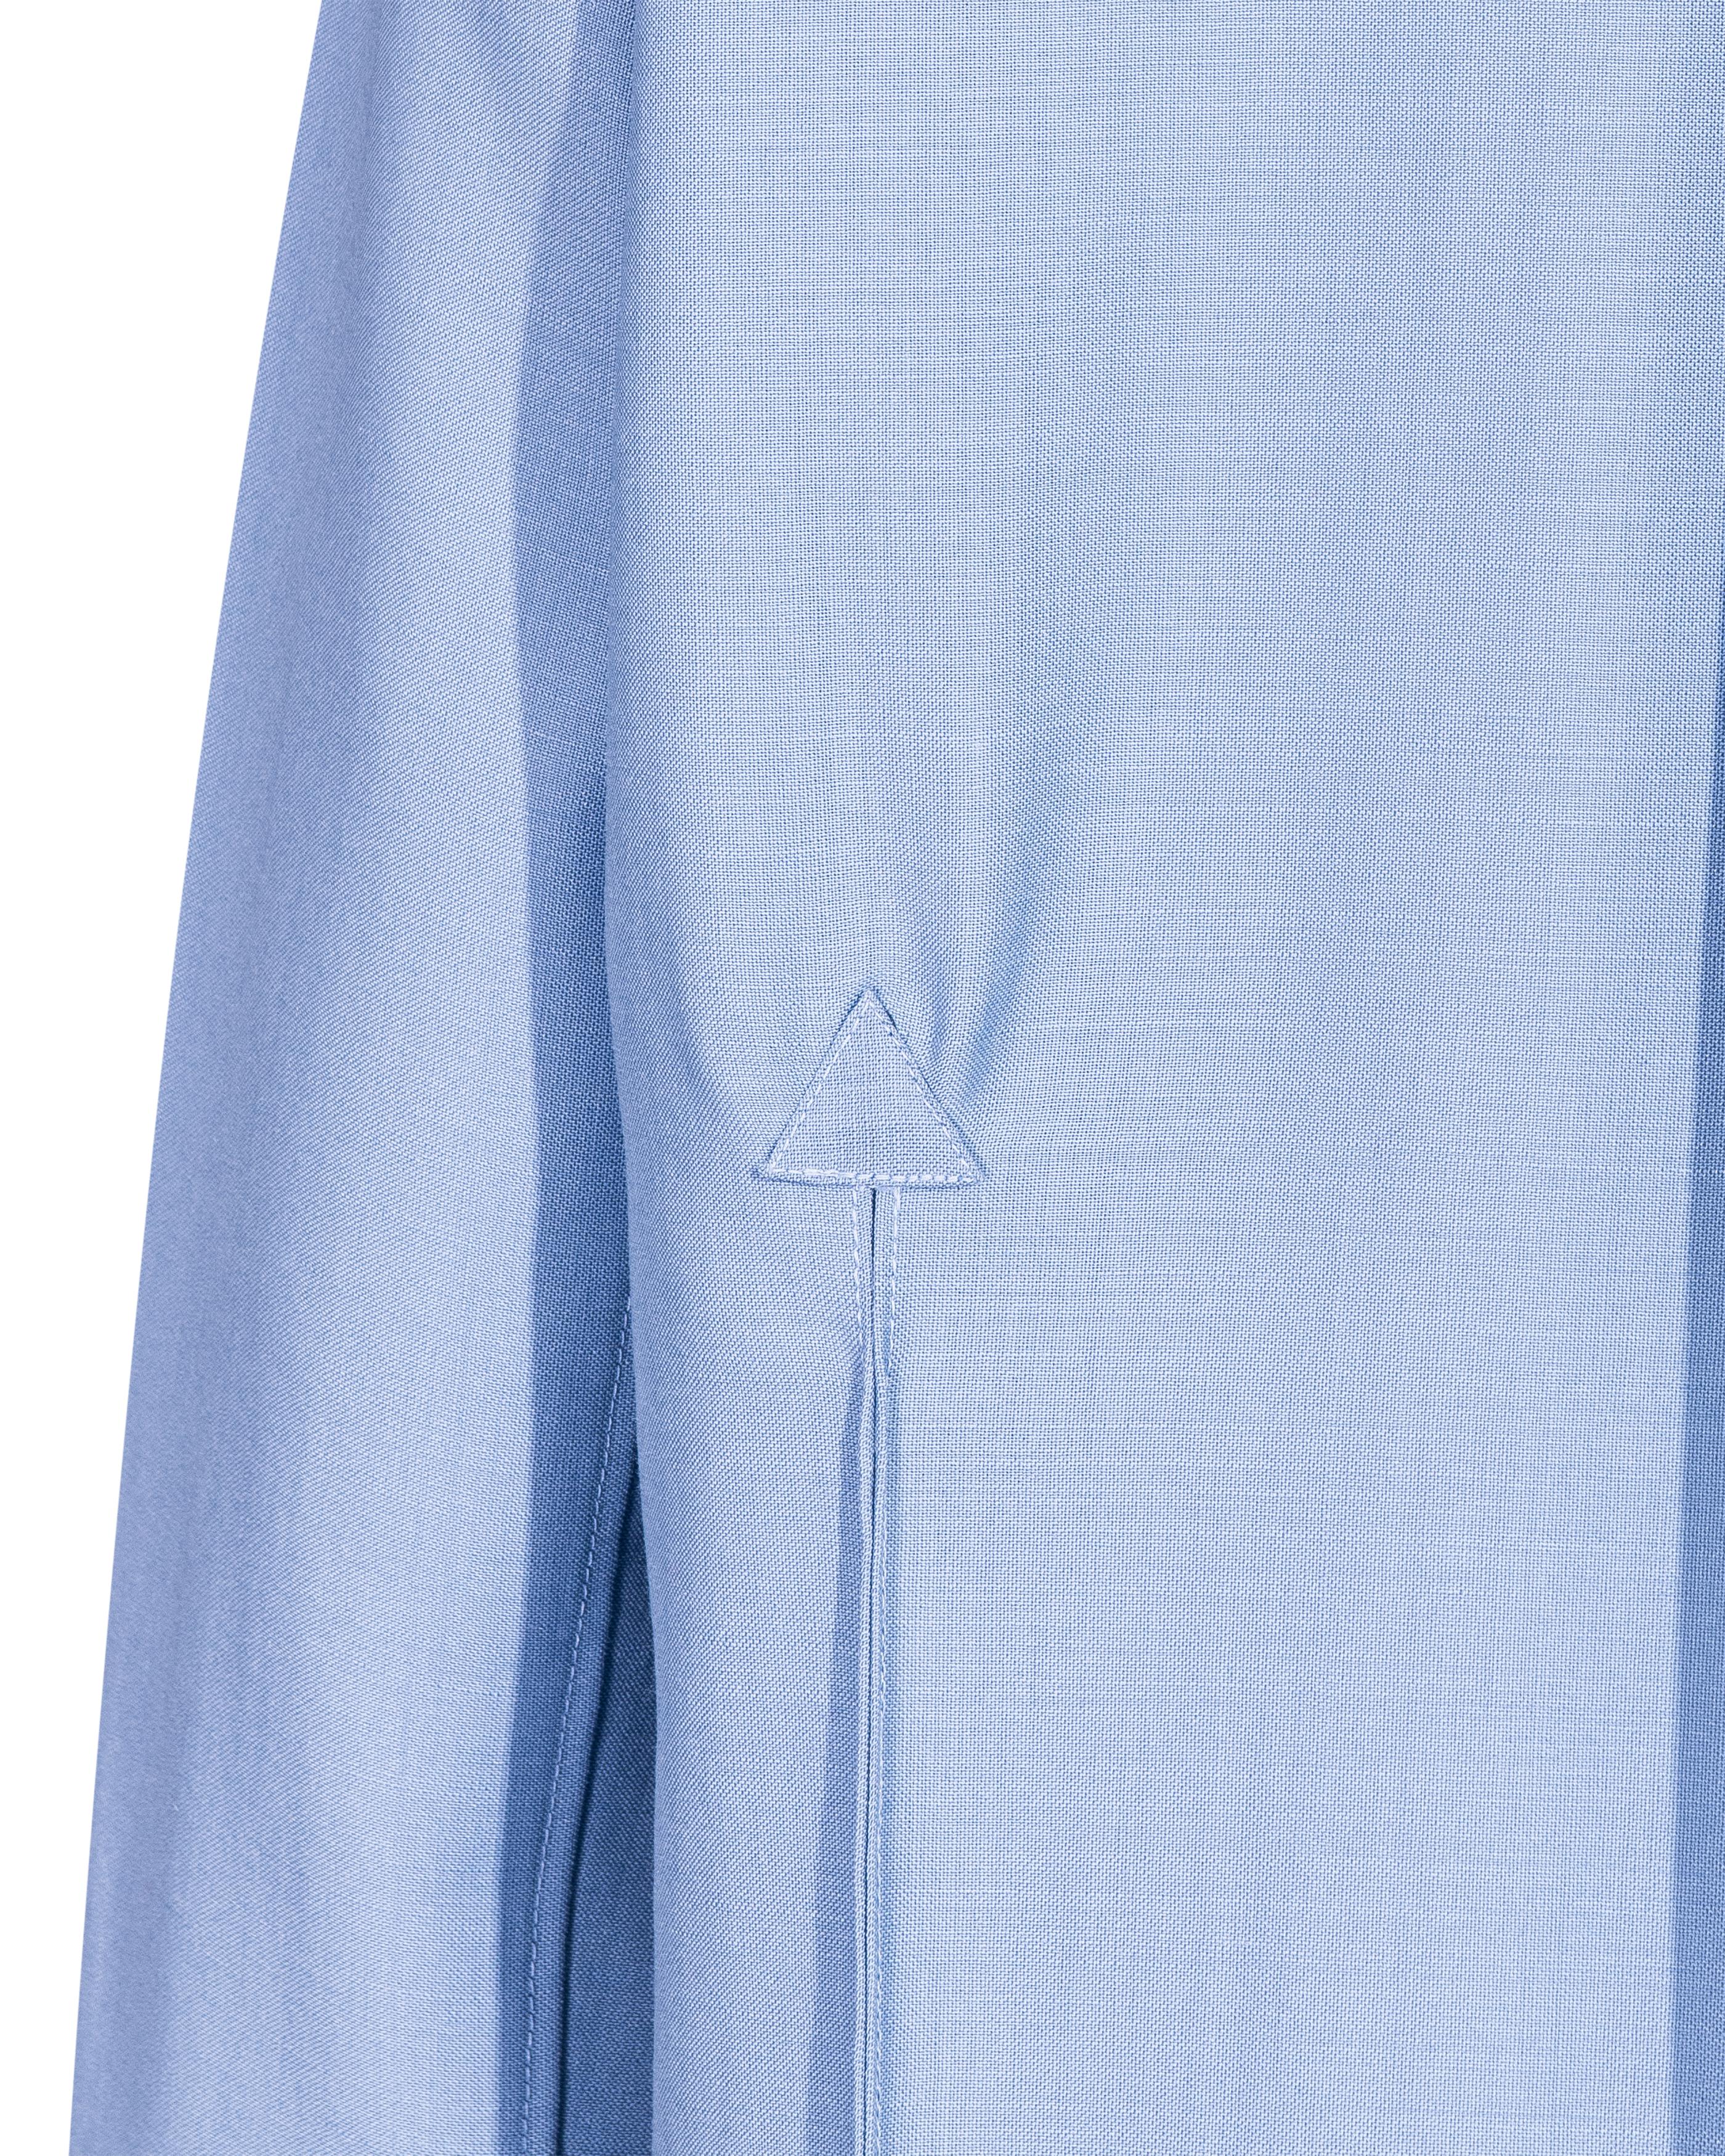 A/W 2017 Céline by Phoebe Philo Button-Up Light Blue Shirt Dress For Sale 6